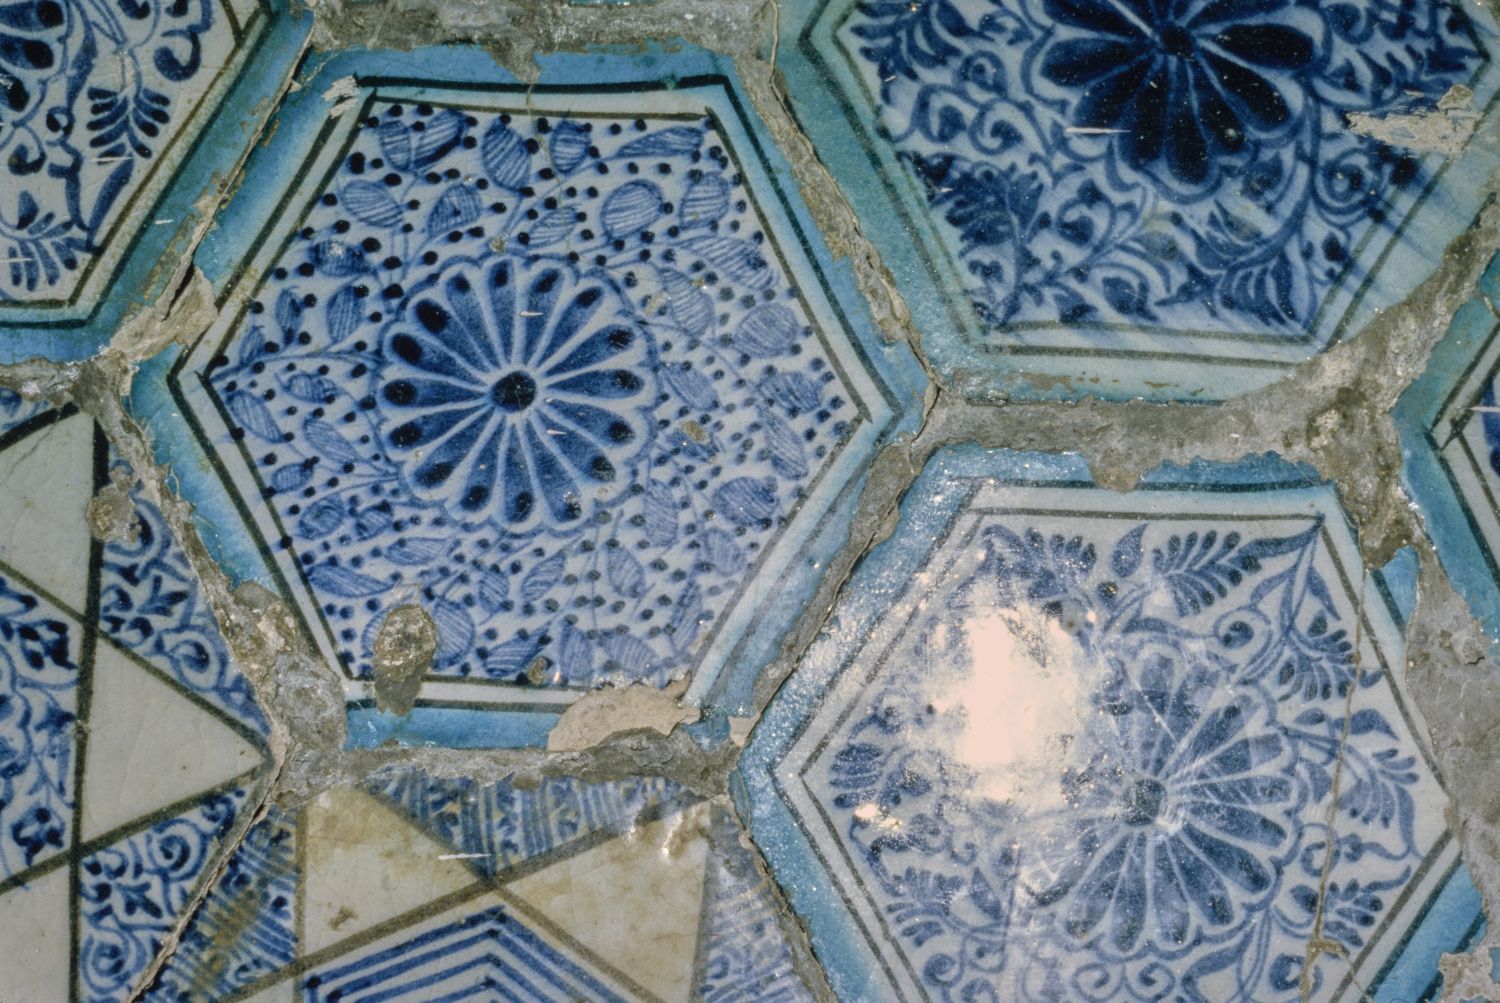 Detail view of tile revetment.